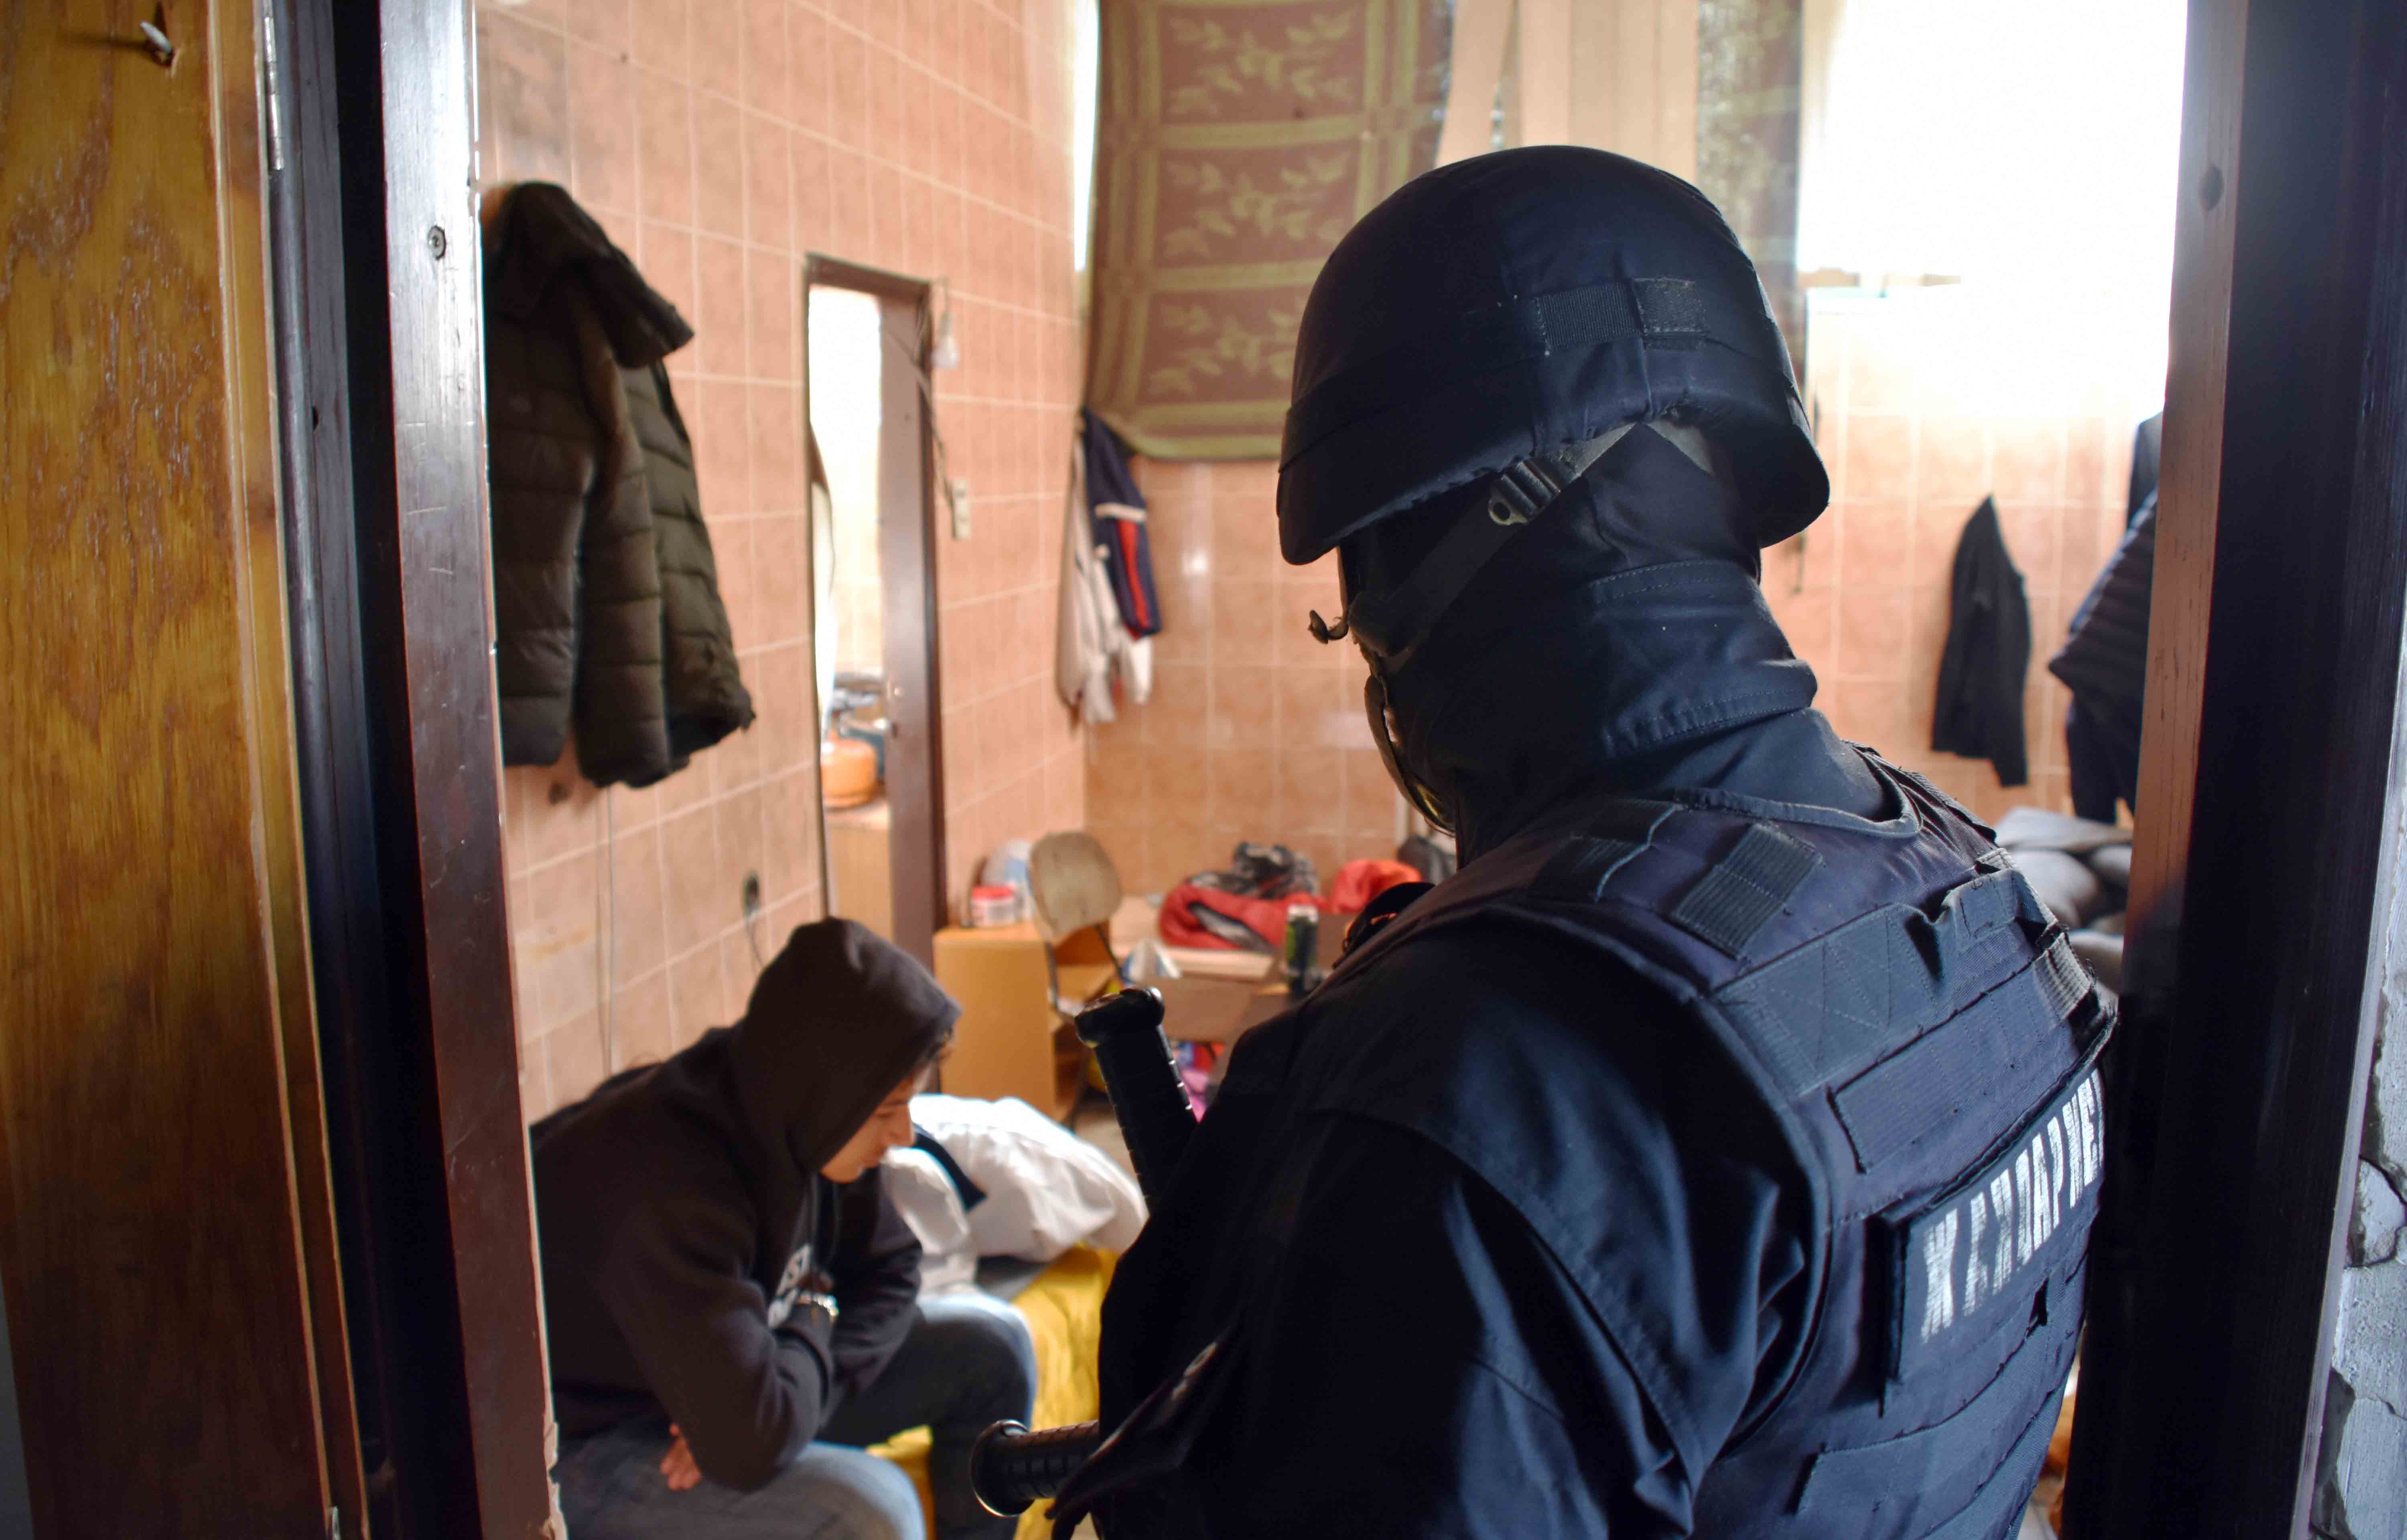 Policija na teritoriji Policijske uprave Kikinda sprovela akciju identifikovanja bezbednosno interesantnih iregularnih migranata